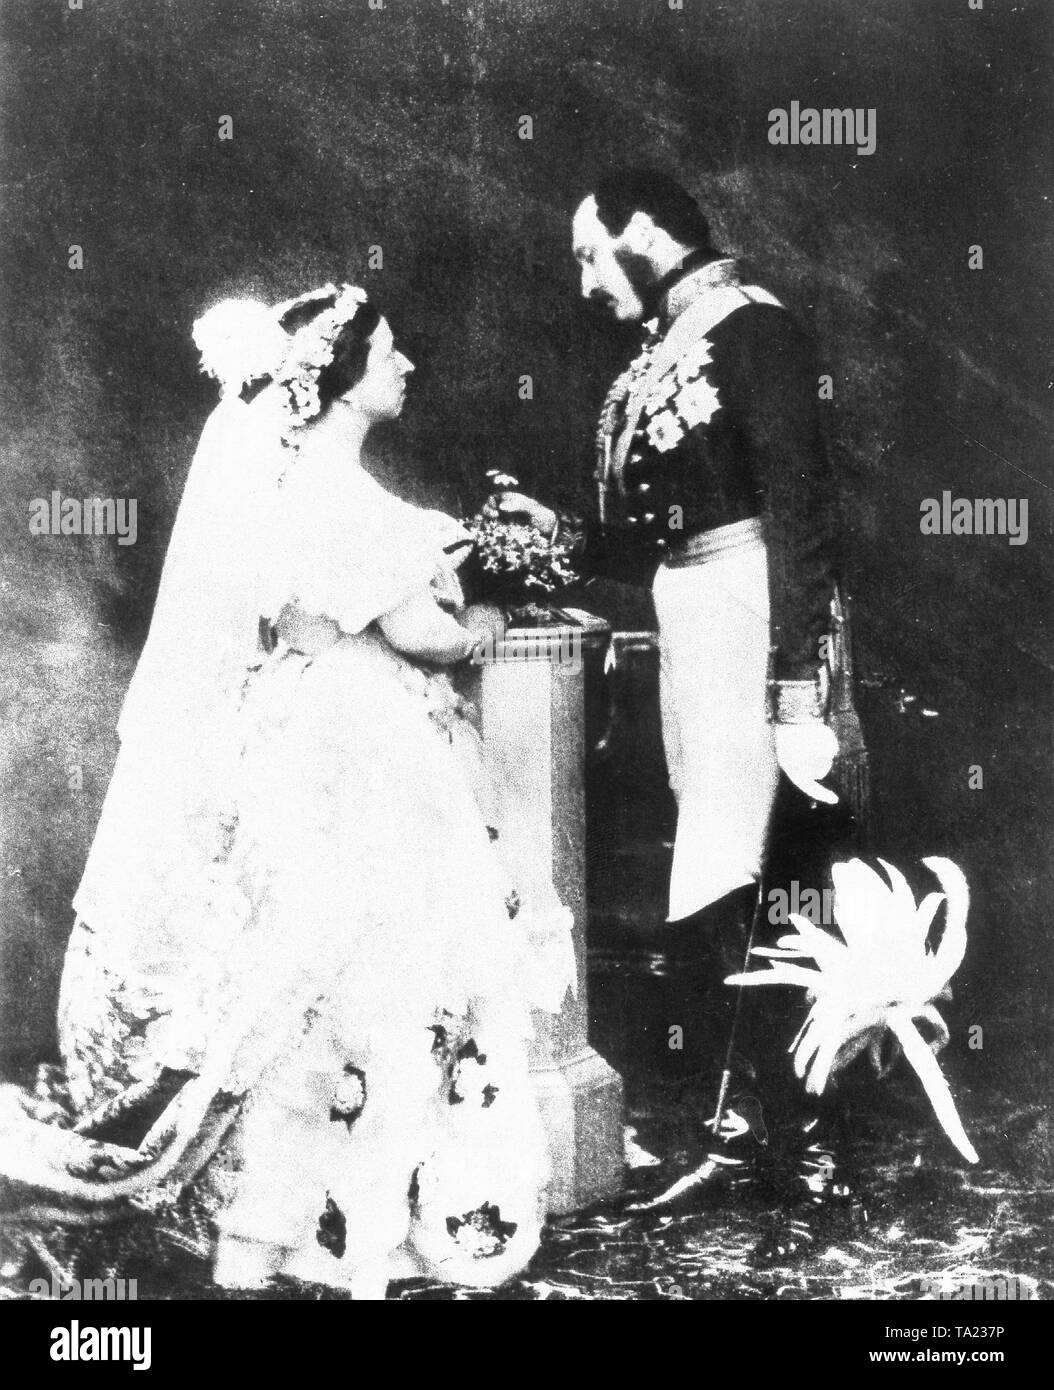 La reine Victoria et le Prince Albert, dans une reconstitution de leur cérémonie de mariage photographié par Roger Fenton, 1854 Banque D'Images